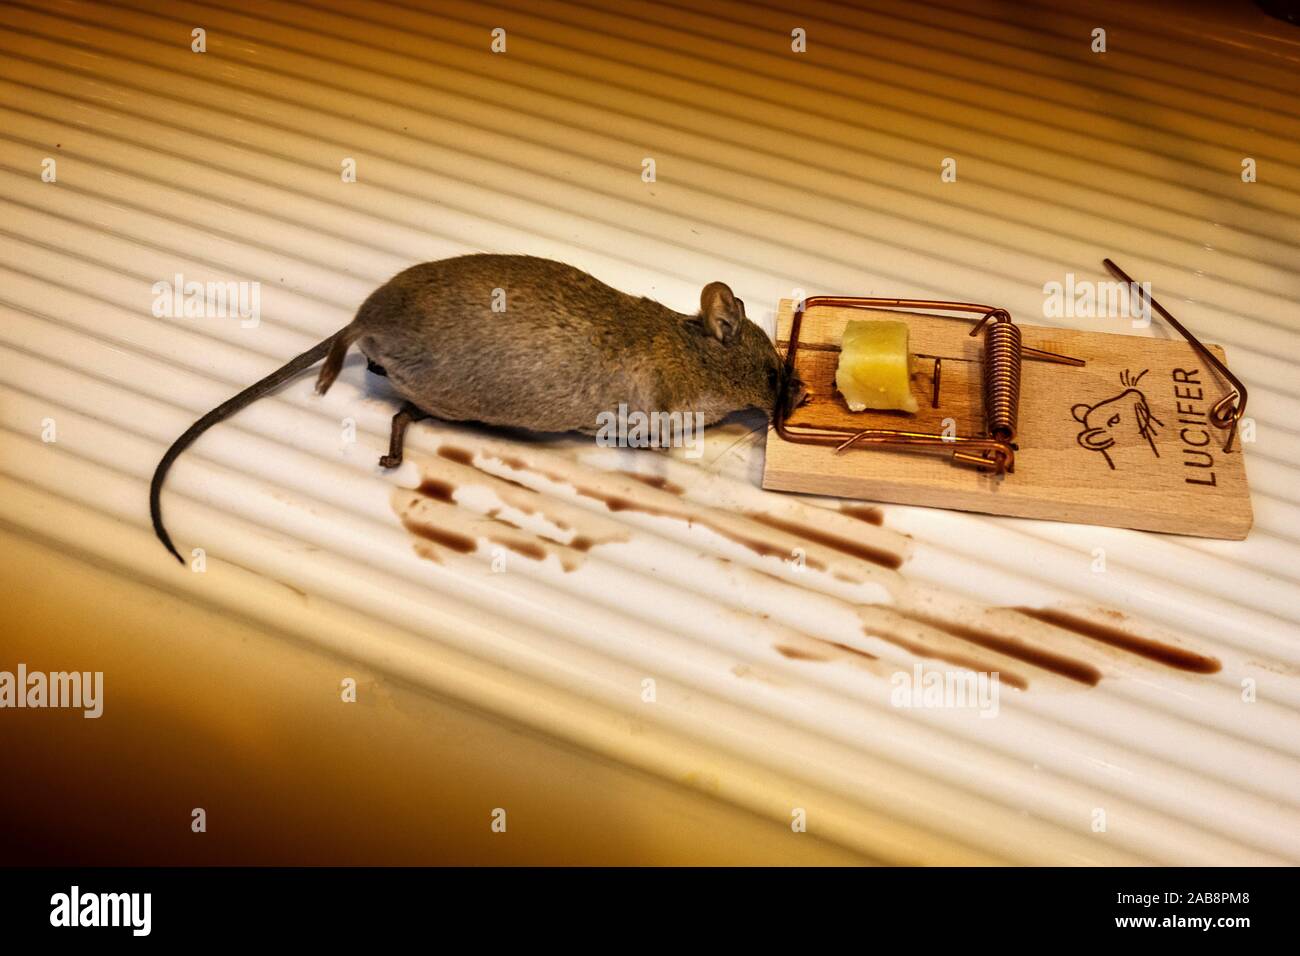 Ratón atrapado en la ratonera Foto de stock